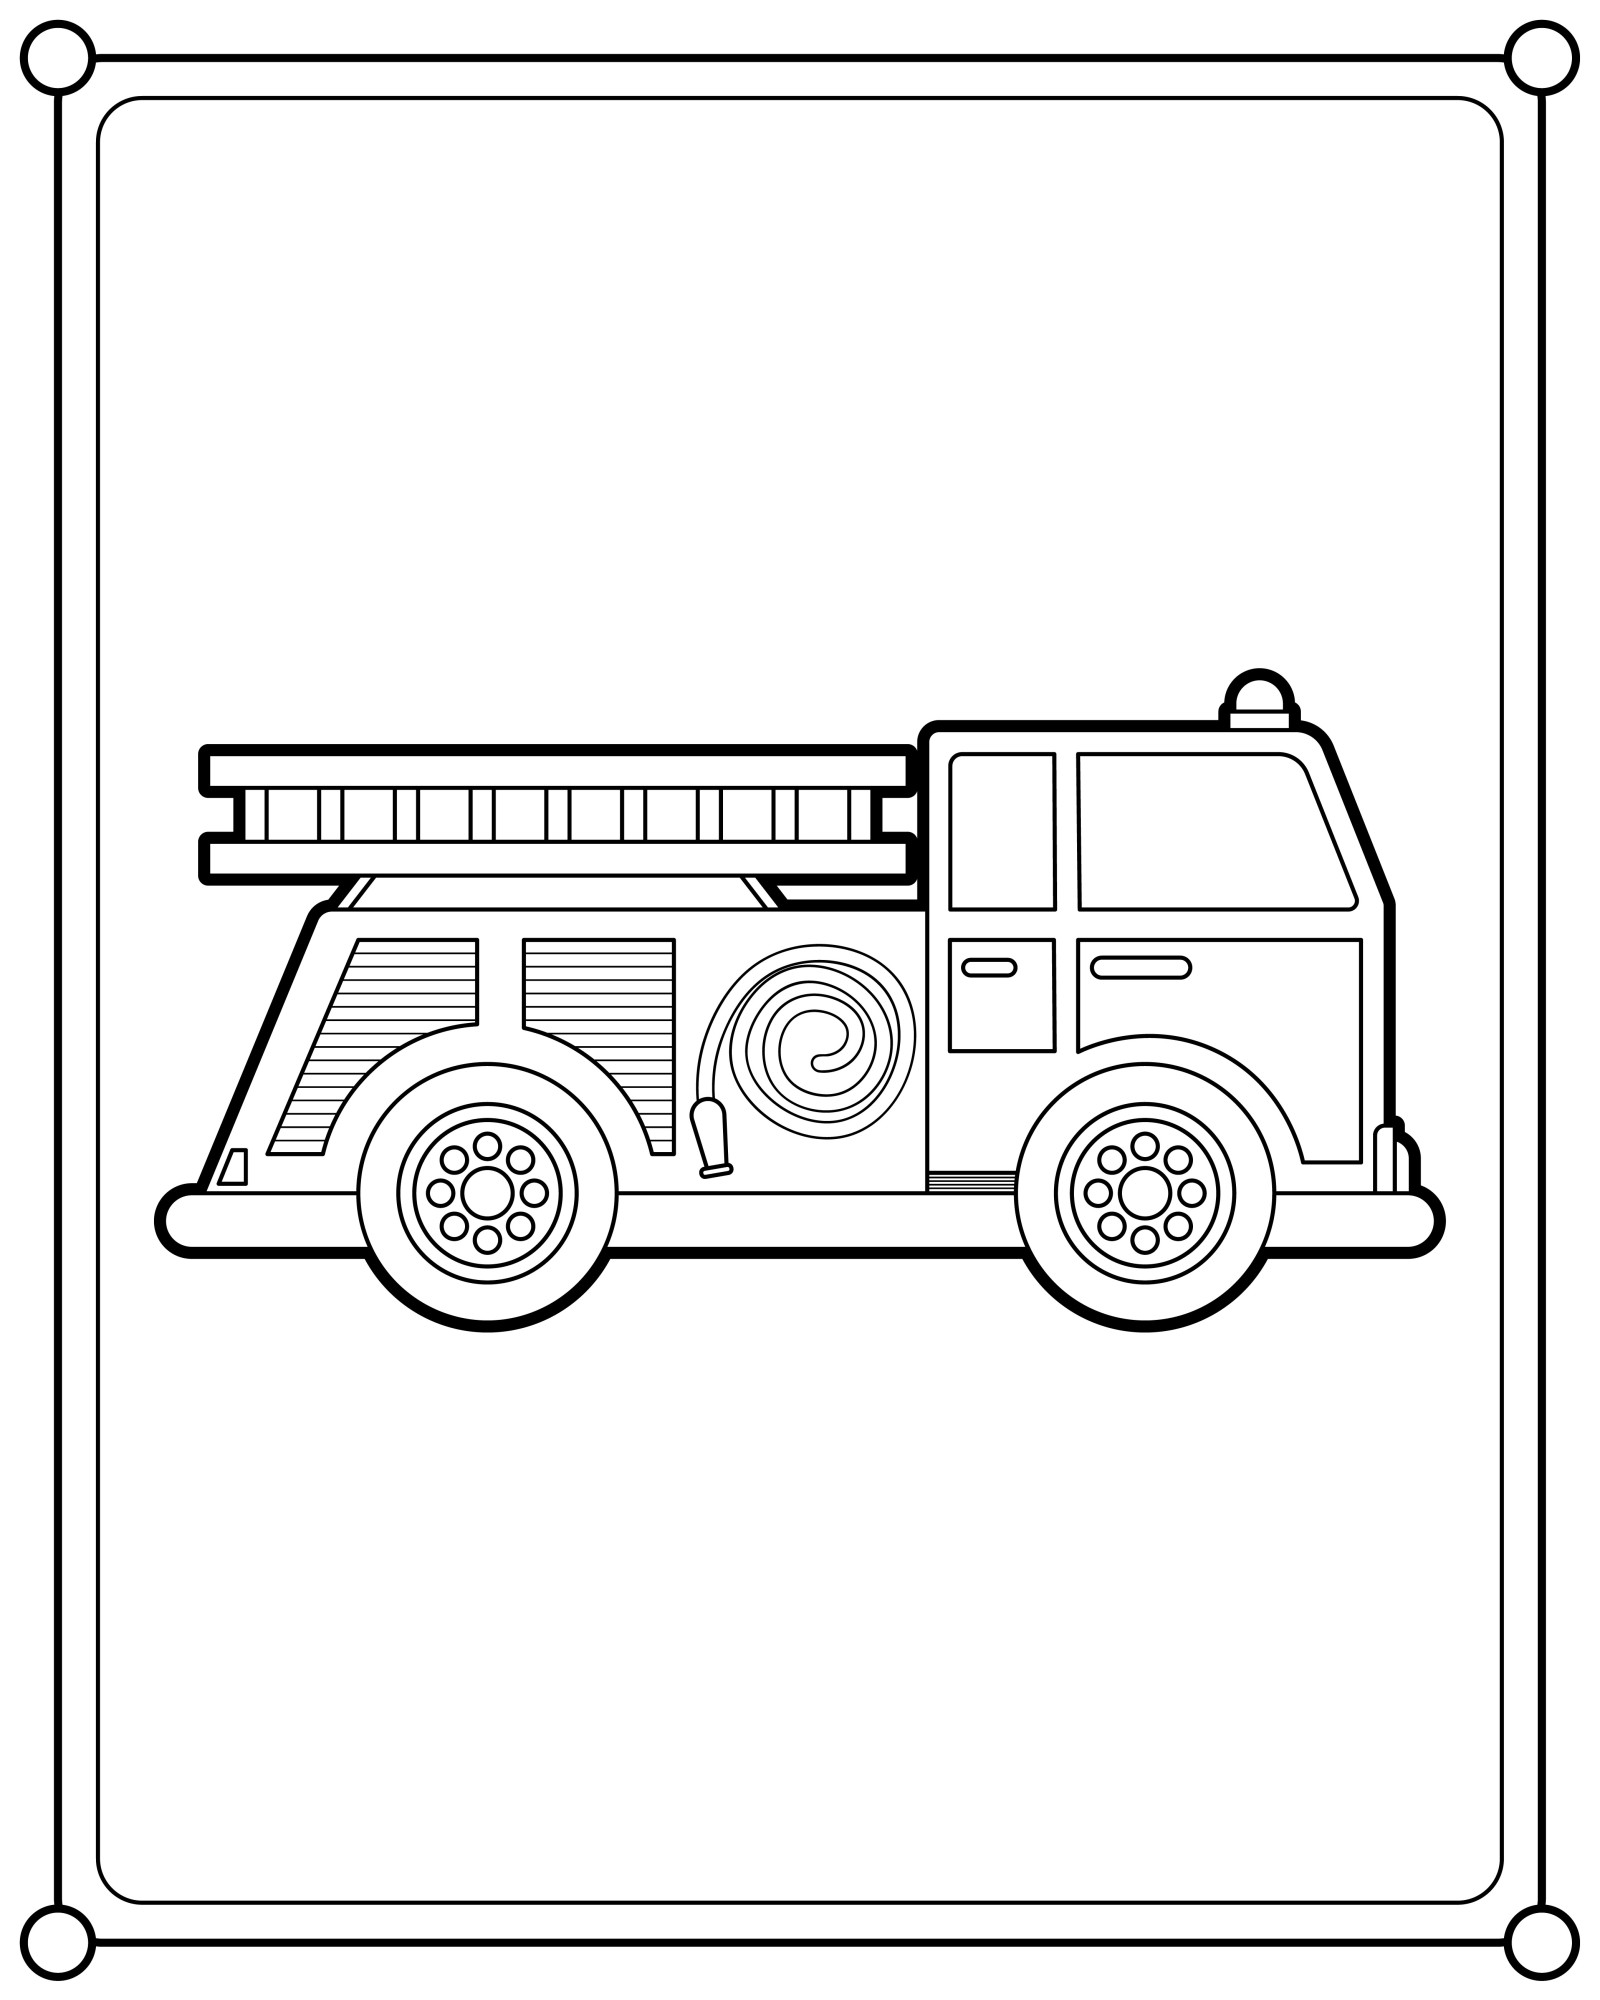 Раскраска для детей: пожарный рукавный автомобиль